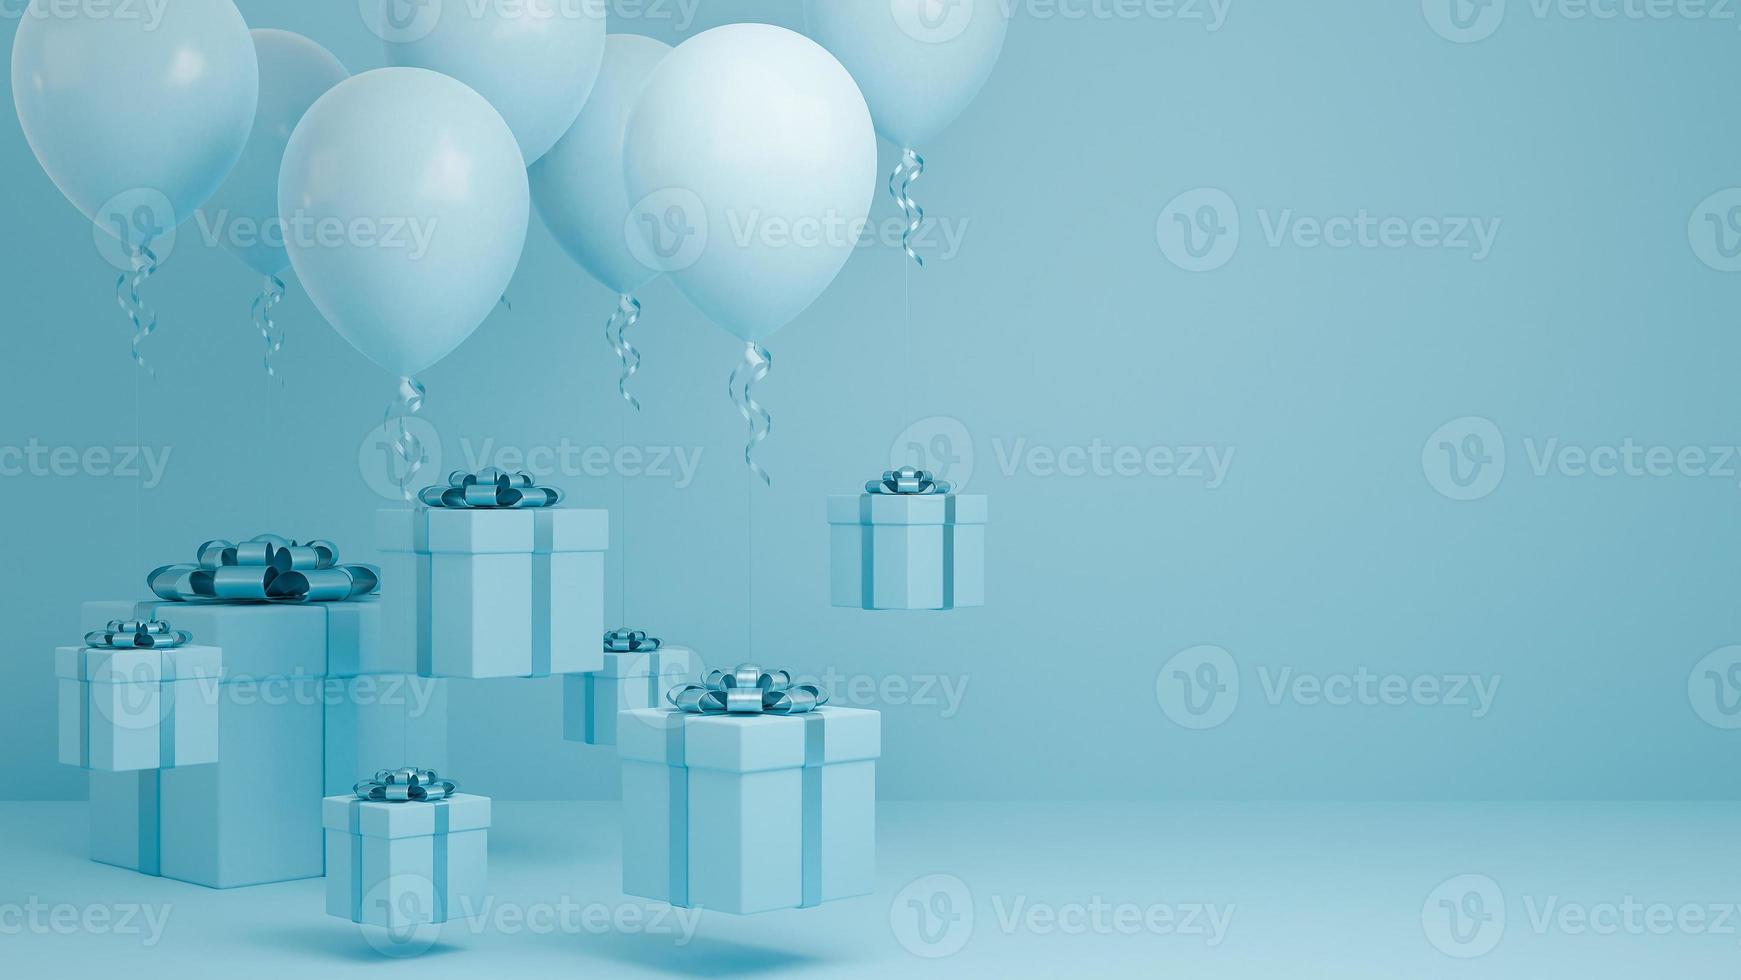 många presentask flyger i luften med ballong och blått band pastell bakgrund., jul och gott nytt år bakgrund koncept., 3D-modell och illustration. foto